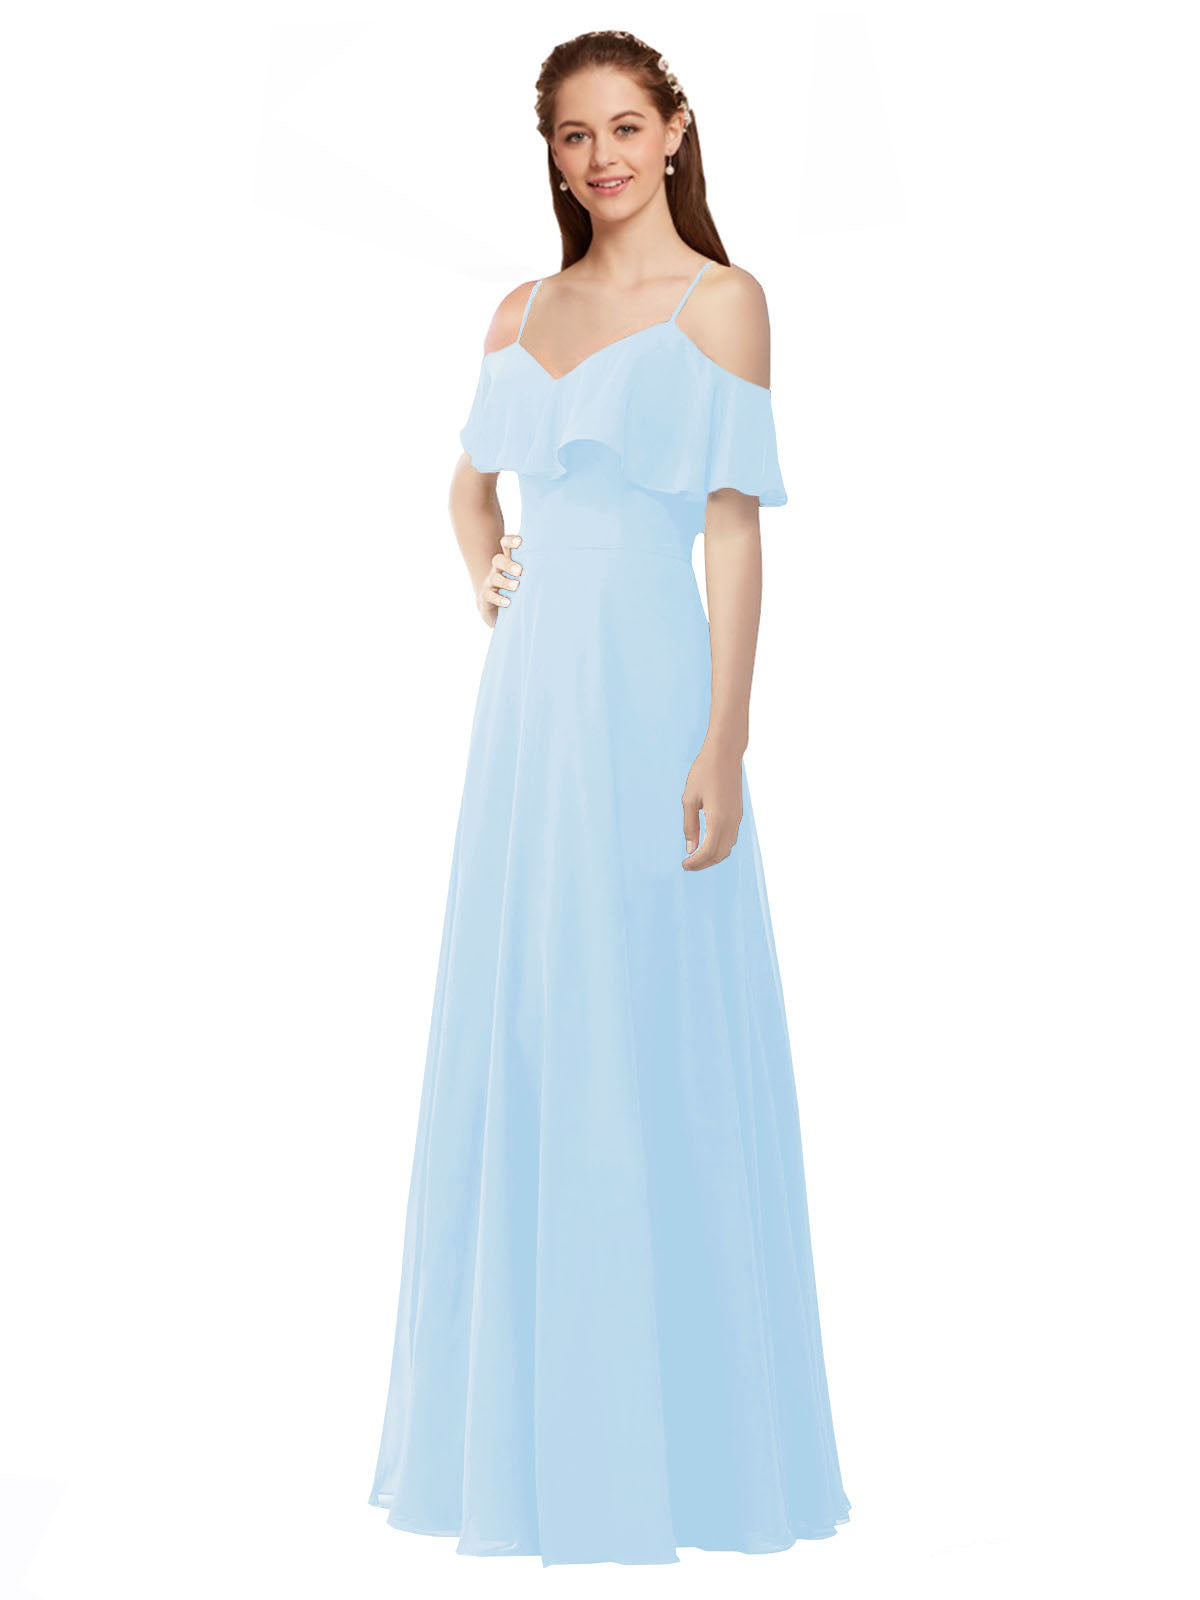 Light Sky Blue A-Line Off the Shoulder V-Neck Sleeveless Long Bridesmaid Dress Marianna